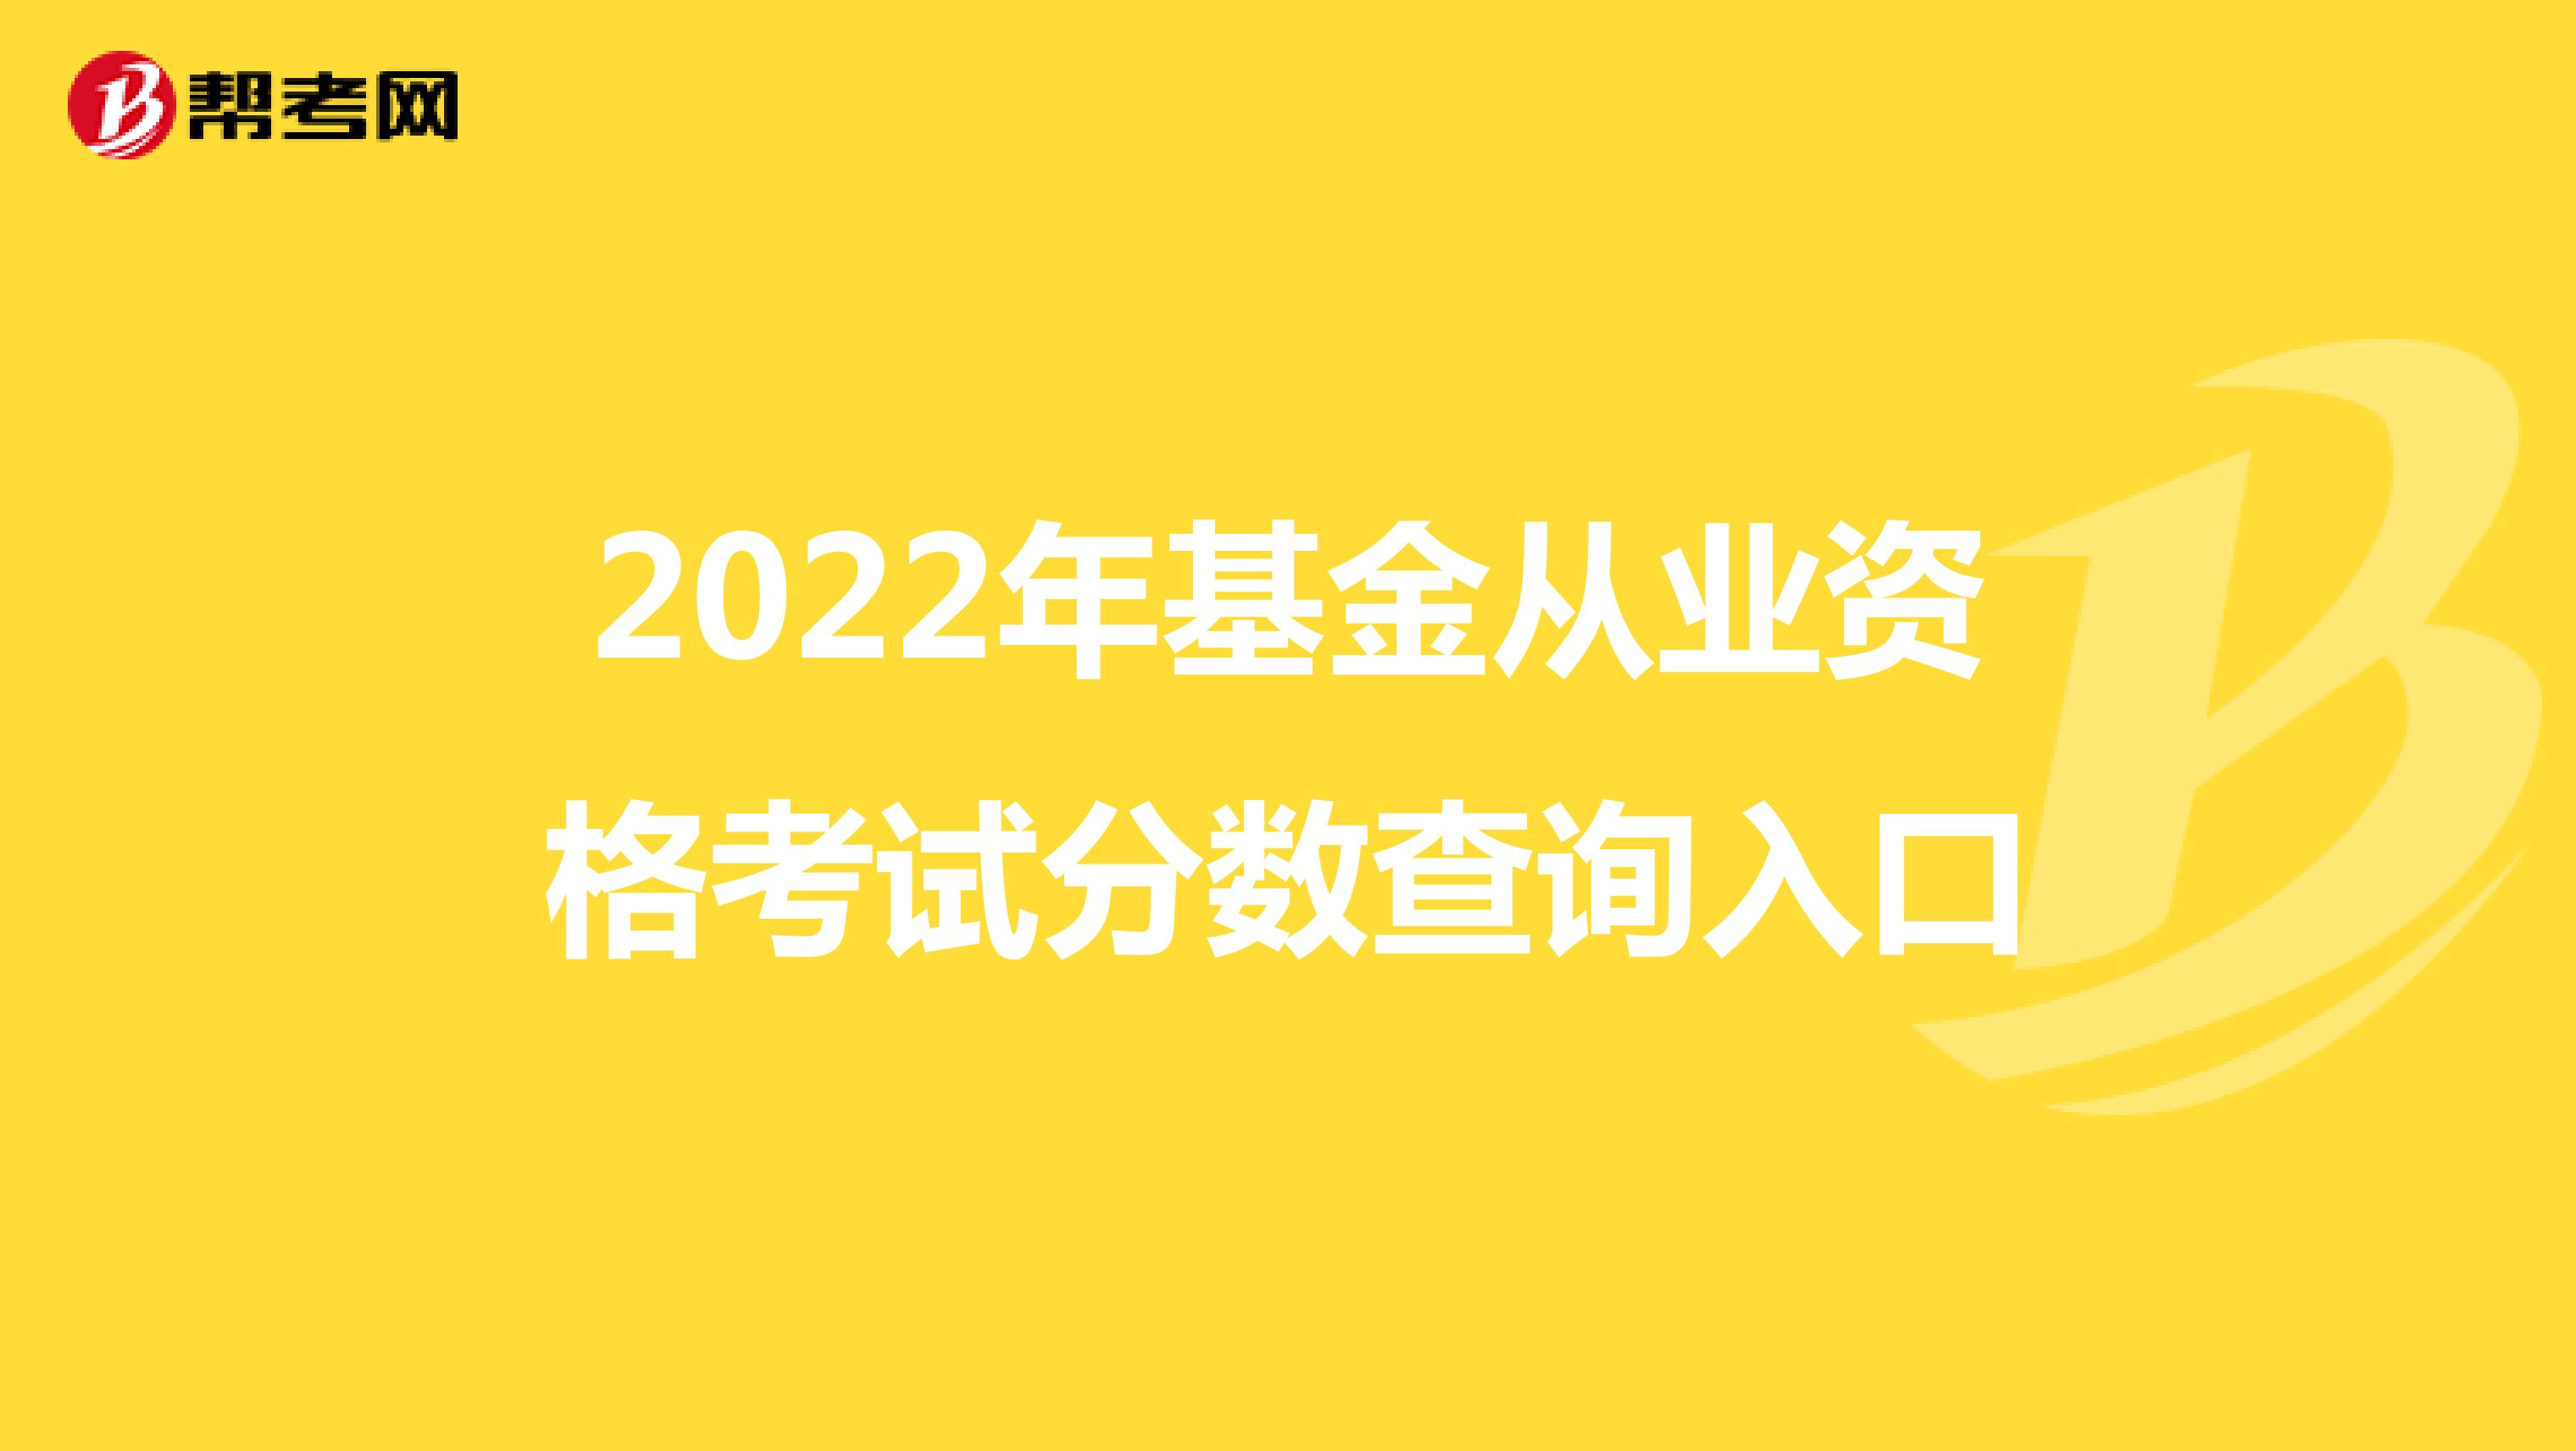 2022年基金从业资格考试分数查询入口